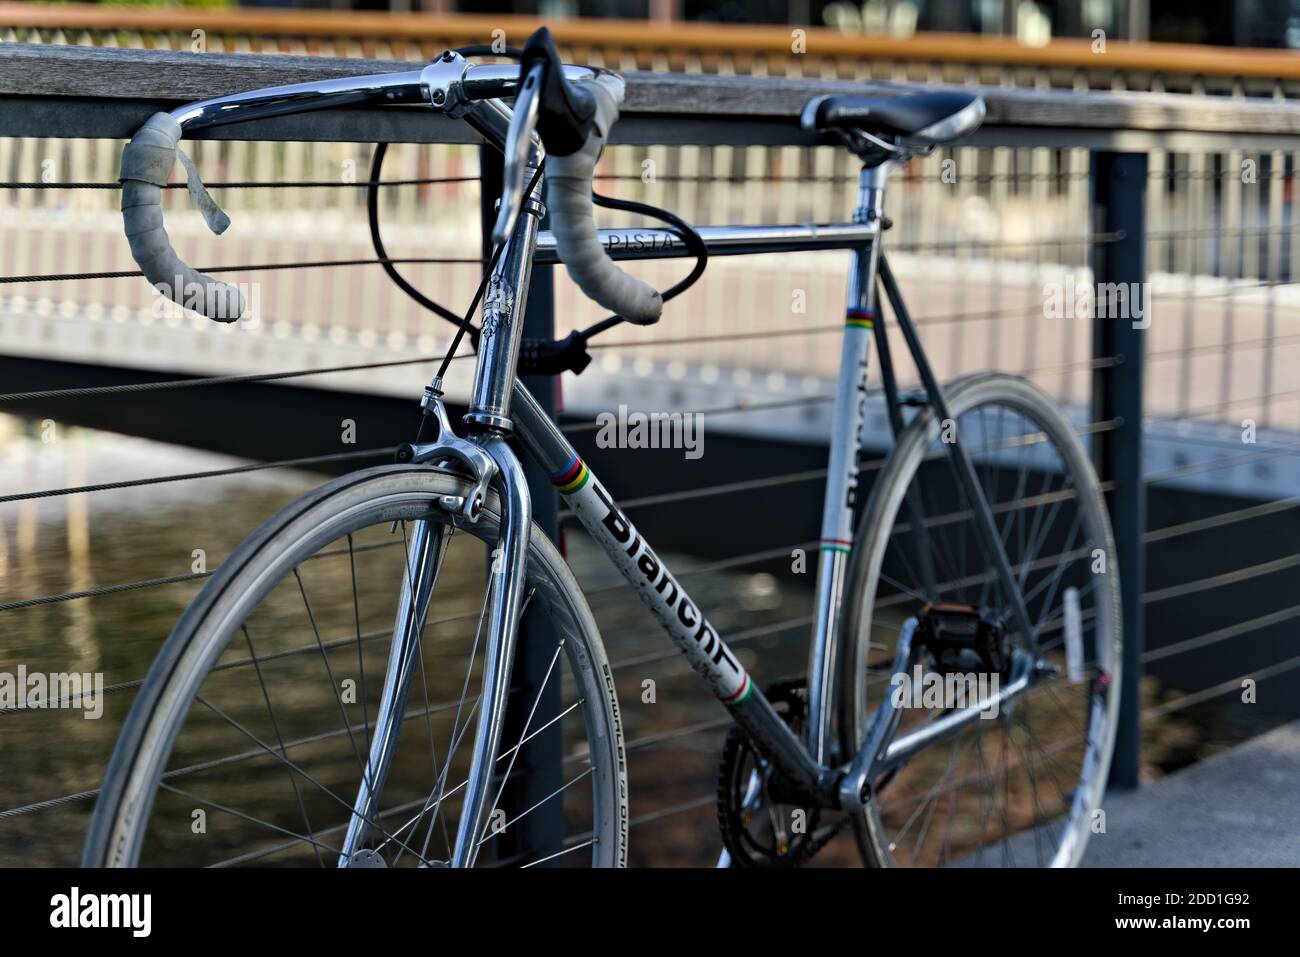 Oslo, Norwegen - 29. August 2020: Retro Bianchi Track Rennrad in Chrom,  geparkt am Wasser Stockfotografie - Alamy